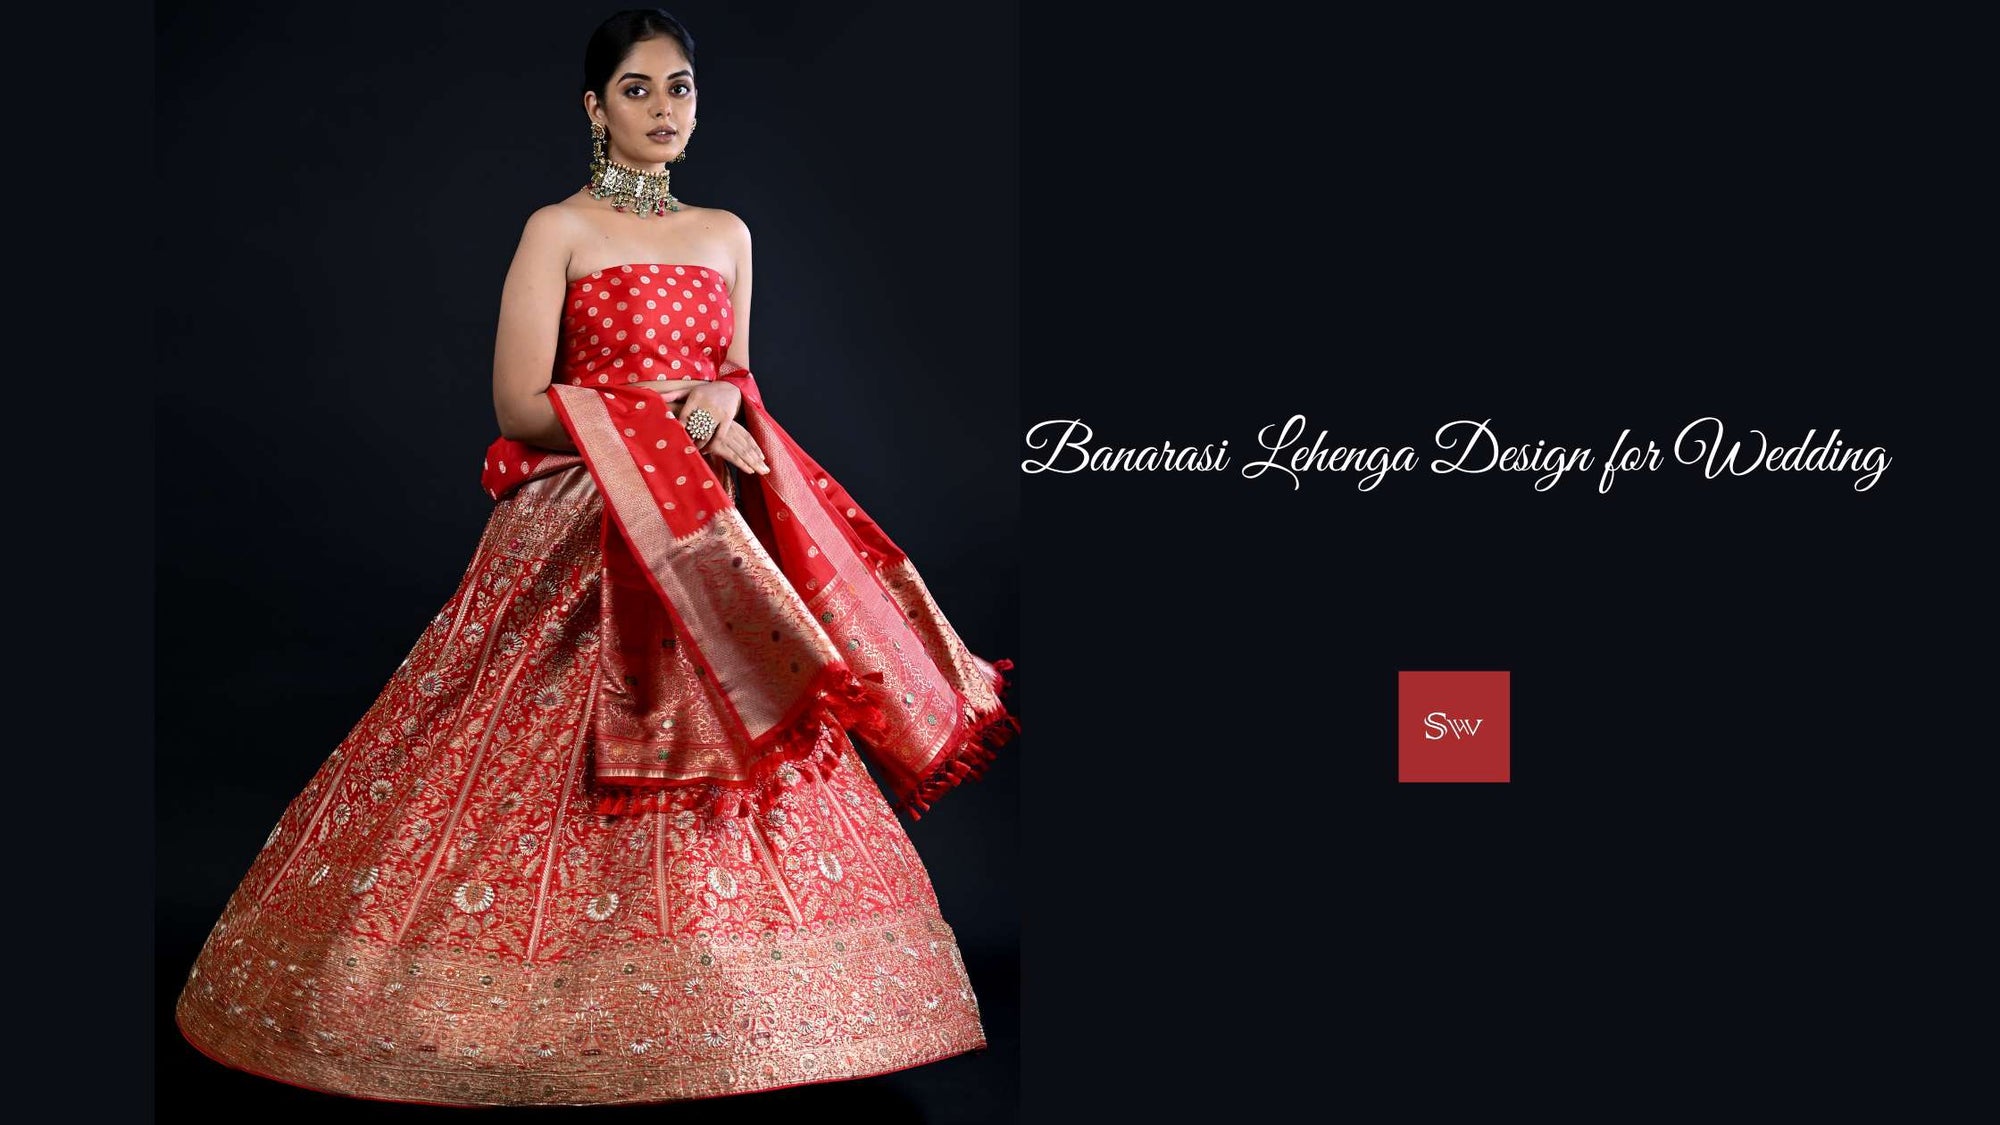 Banarasi Lehenga Design for Wedding